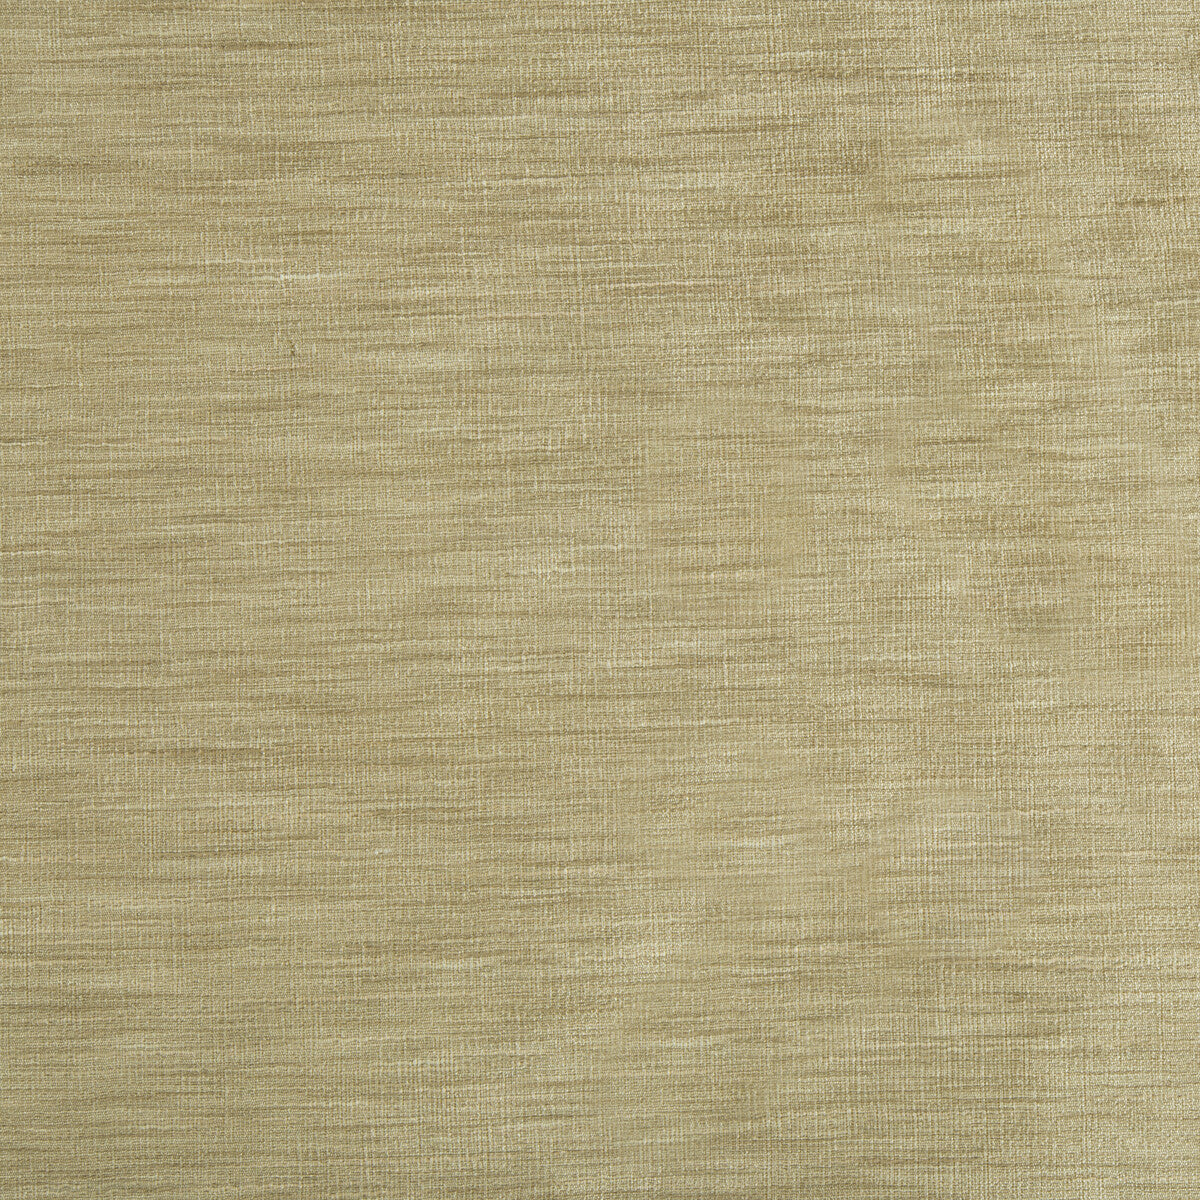 Kravet Basics fabric in 9413-6006 color - pattern 9413.6006.0 - by Kravet Basics